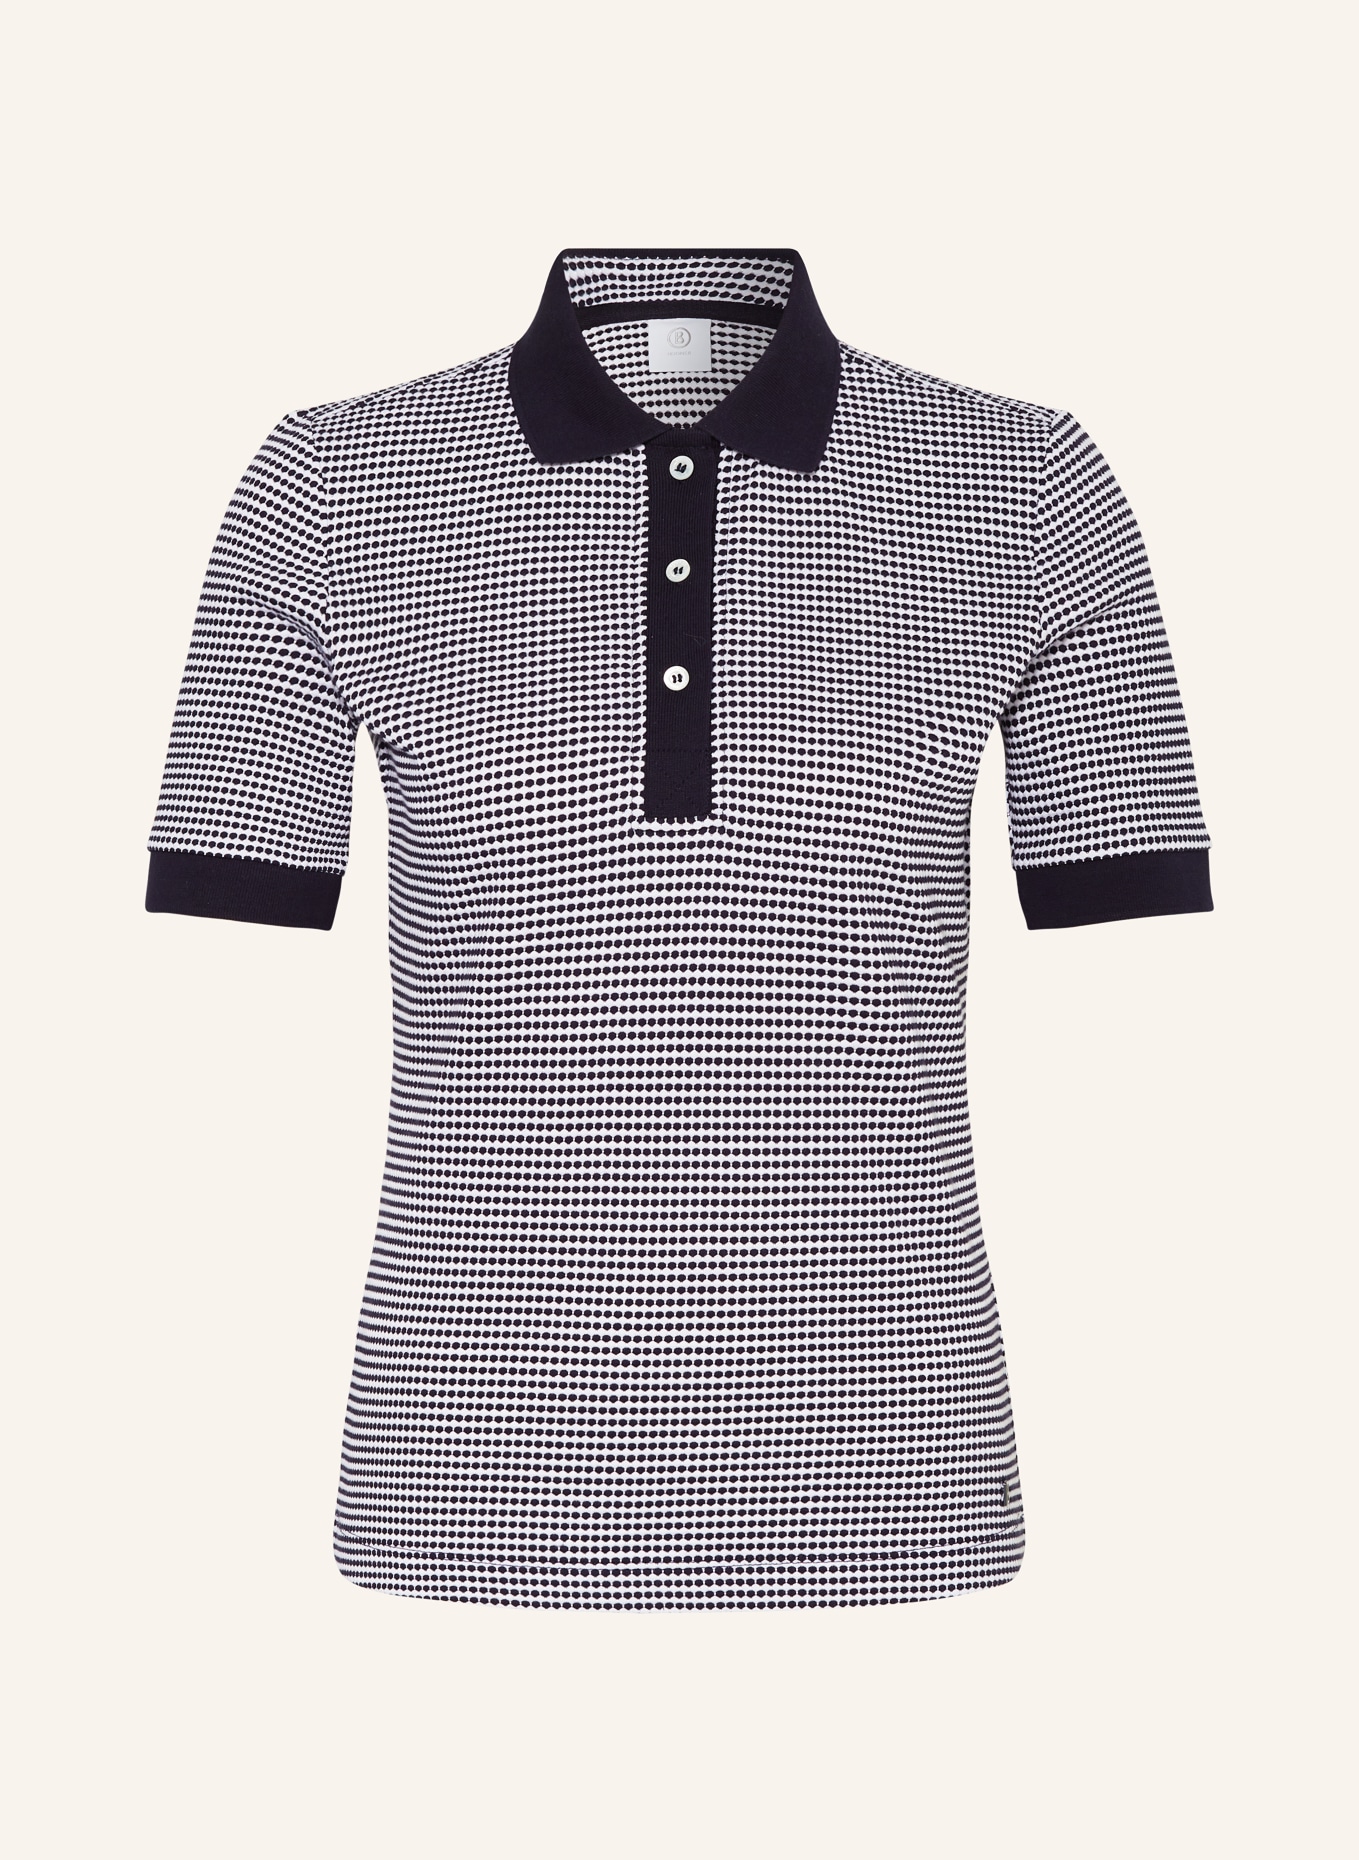 BOGNER Strick-Poloshirt WENDY, Farbe: DUNKELBLAU/ WEISS (Bild 1)